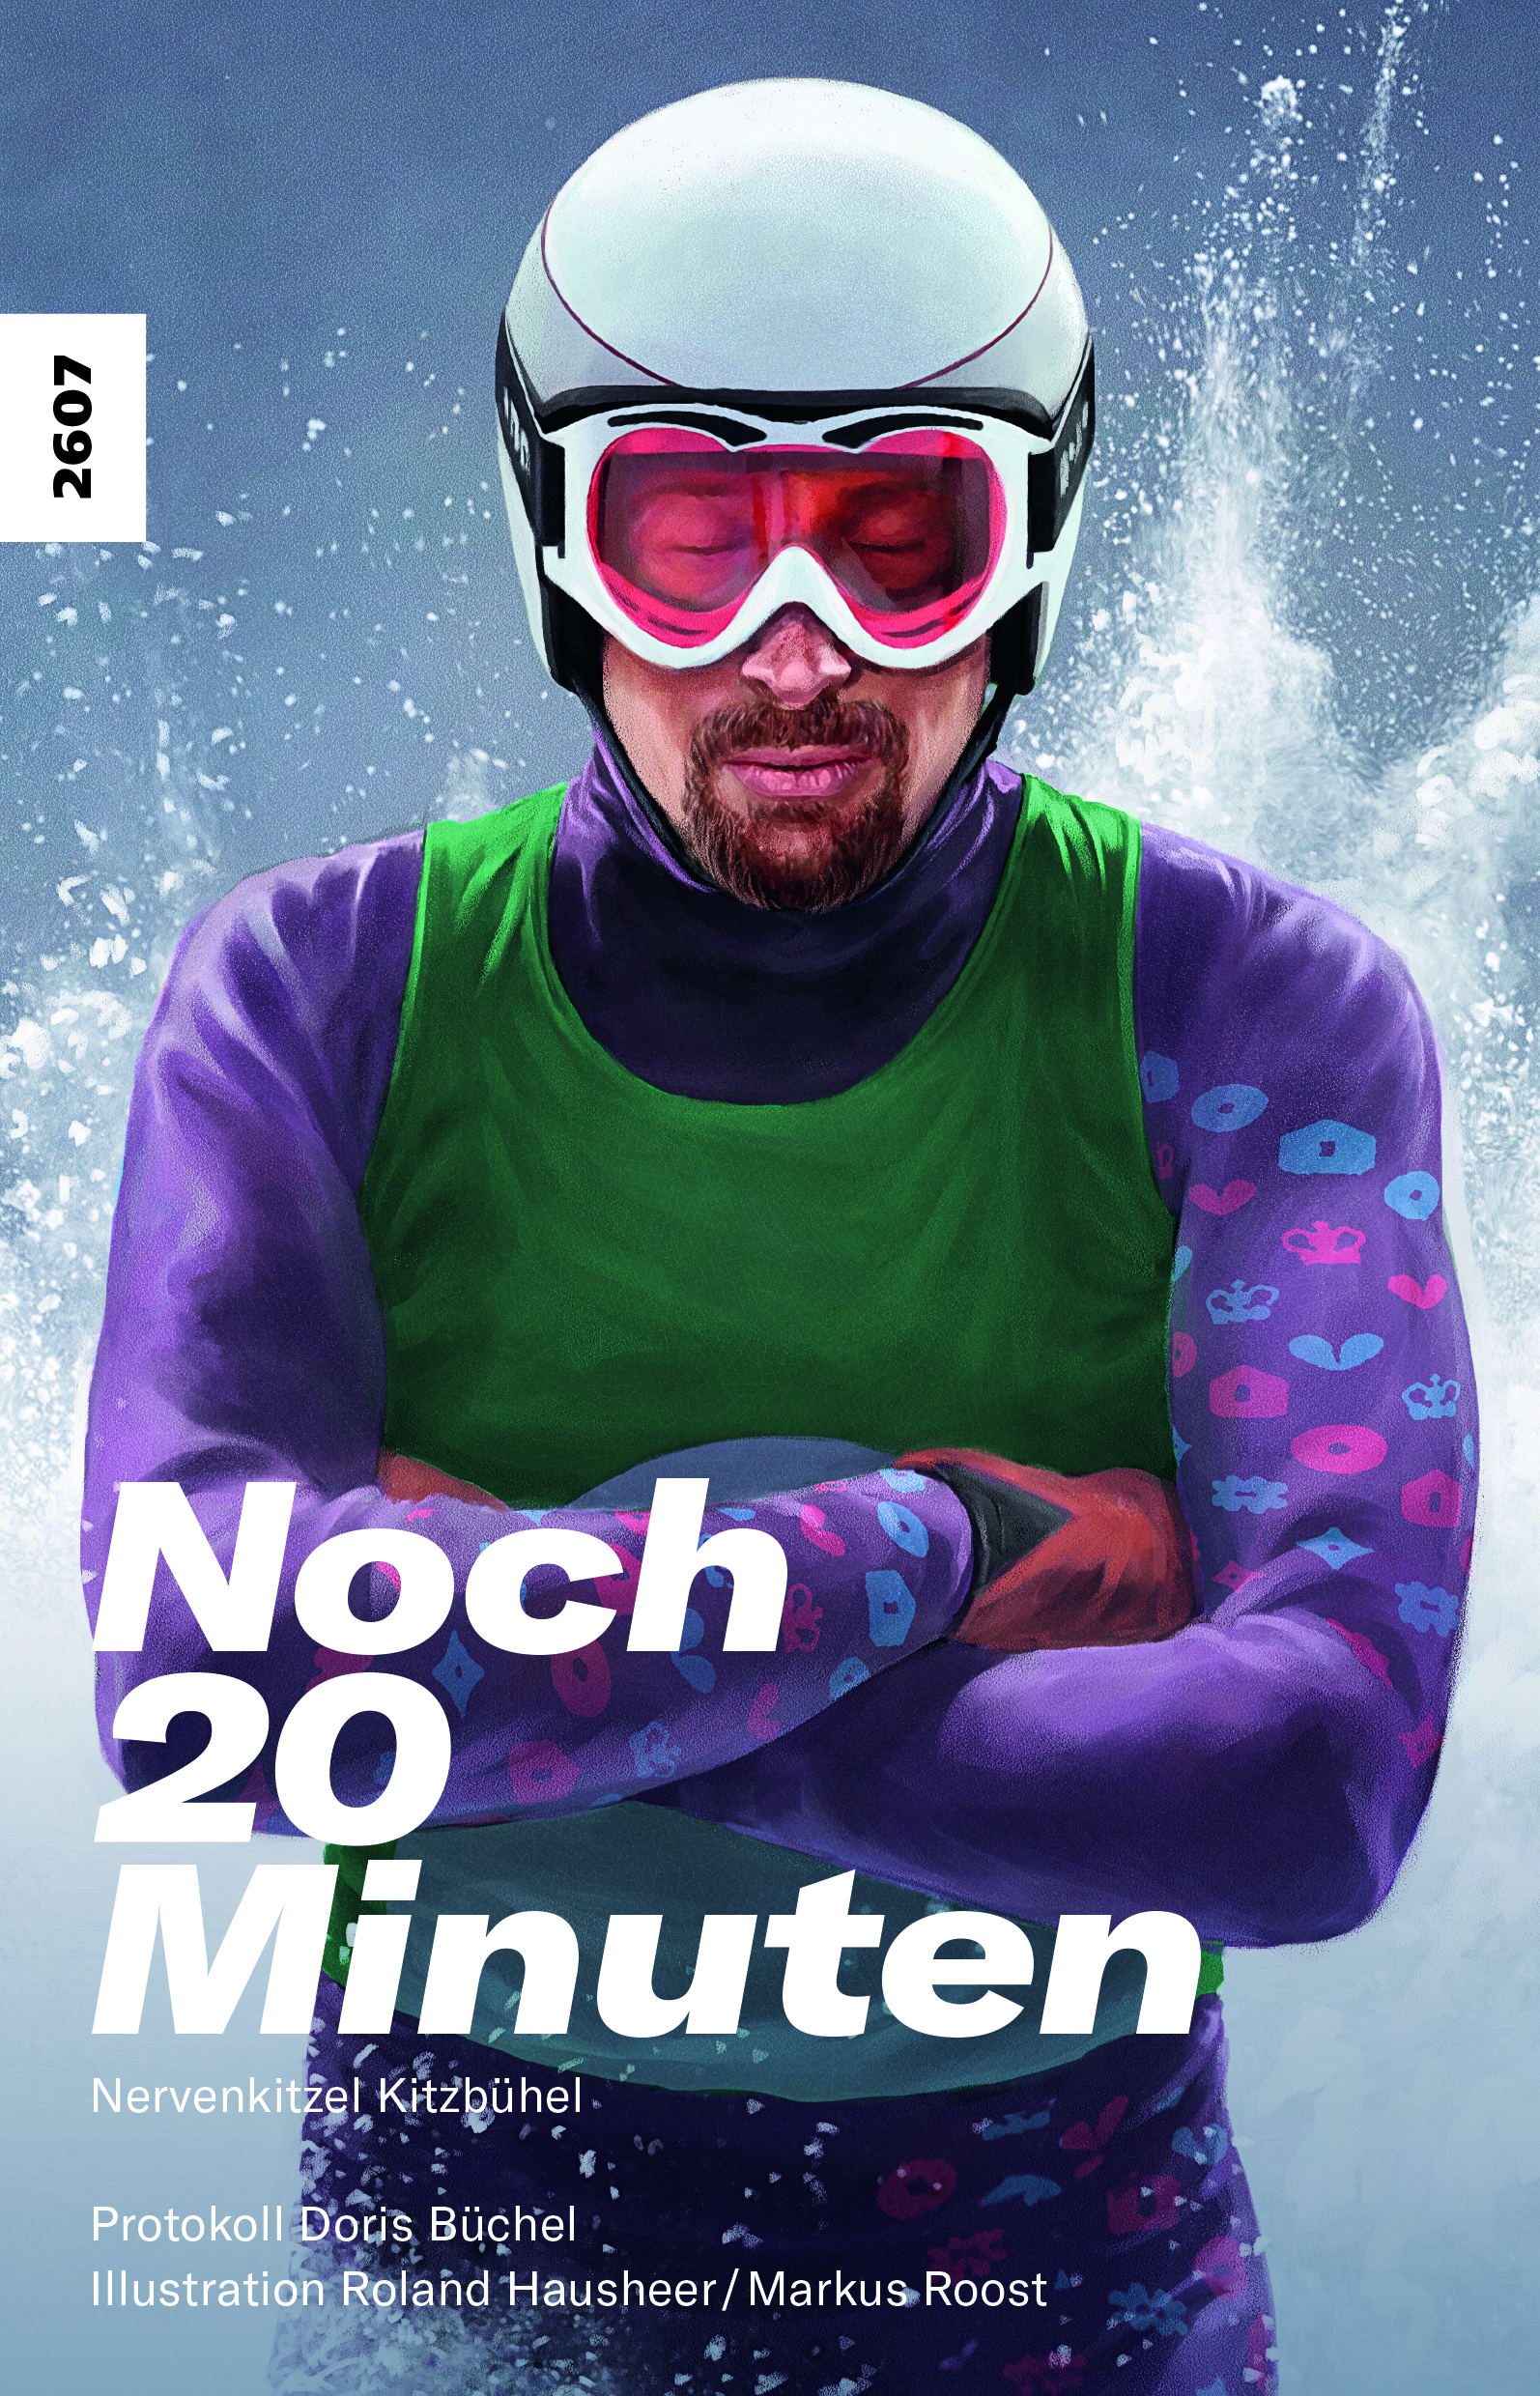 Noch 20 Minuten – Nervenkitzel Kitzbuehel, ein Buch von Doris Buechel, Illustration von Roland Hausheer/Markus Roost, SJW, Ski